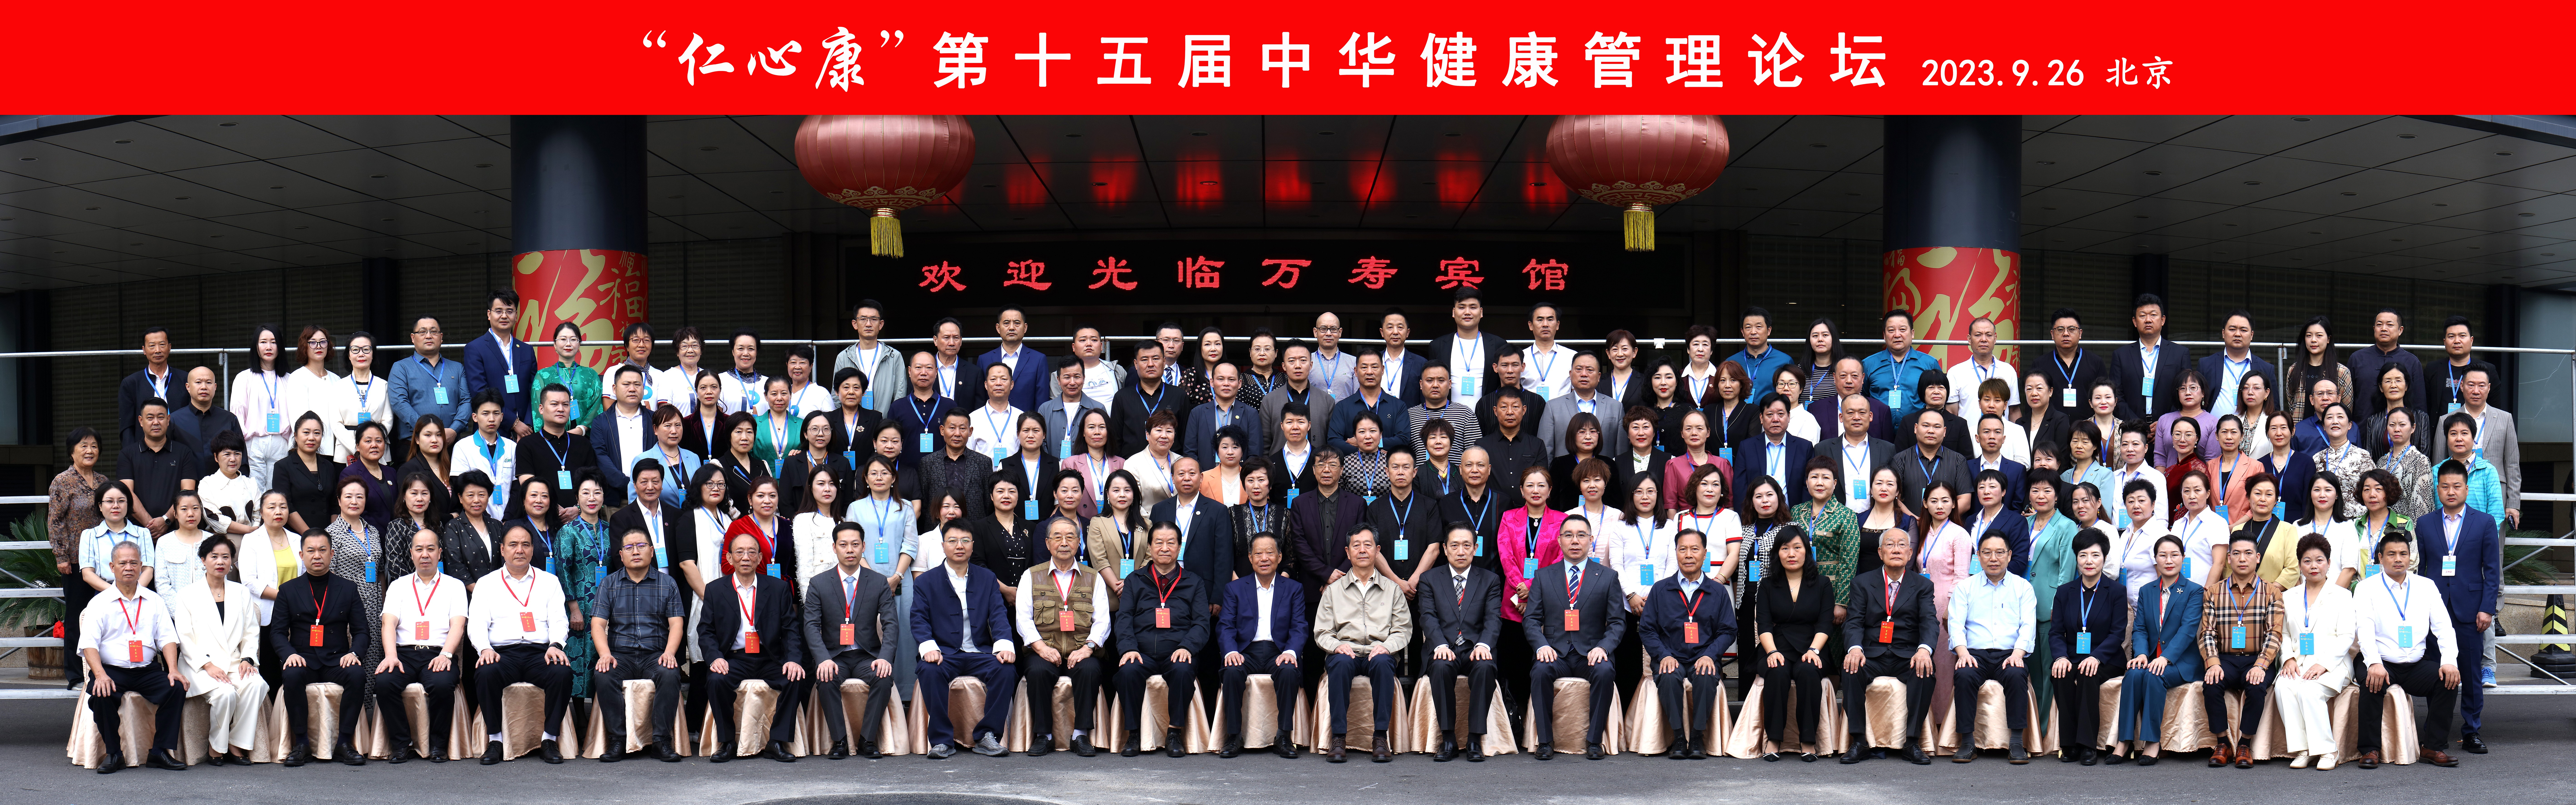 2023“仁心康”杯 第十五届中华健康管理论坛在京隆重召开